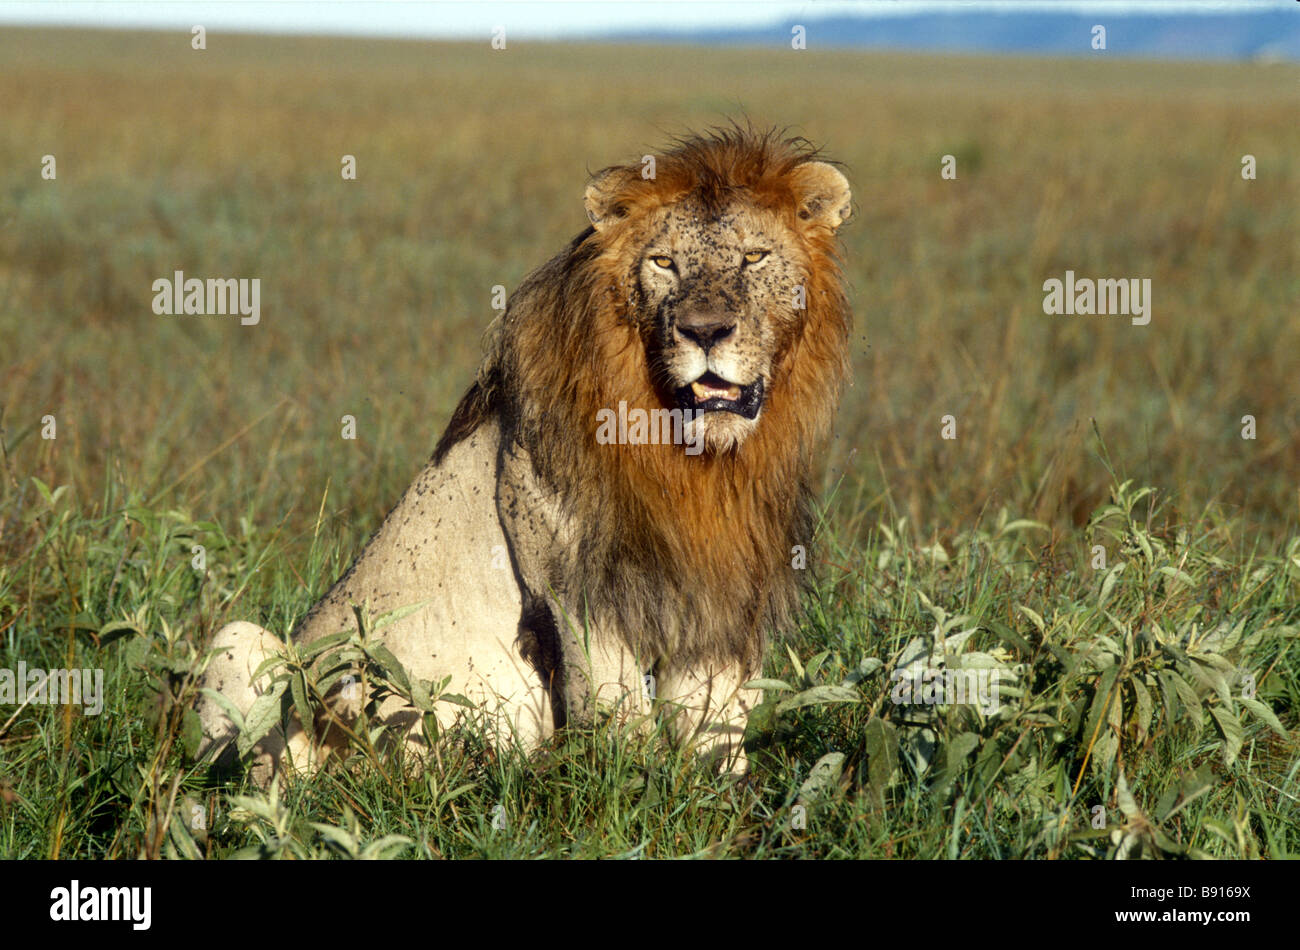 Männliche Löwen sitzen in Grünland im Serengeti Nationalpark Tansania Ostafrika sein Antlitz und Mähne sind mit fliegen bedeckt. Stockfoto